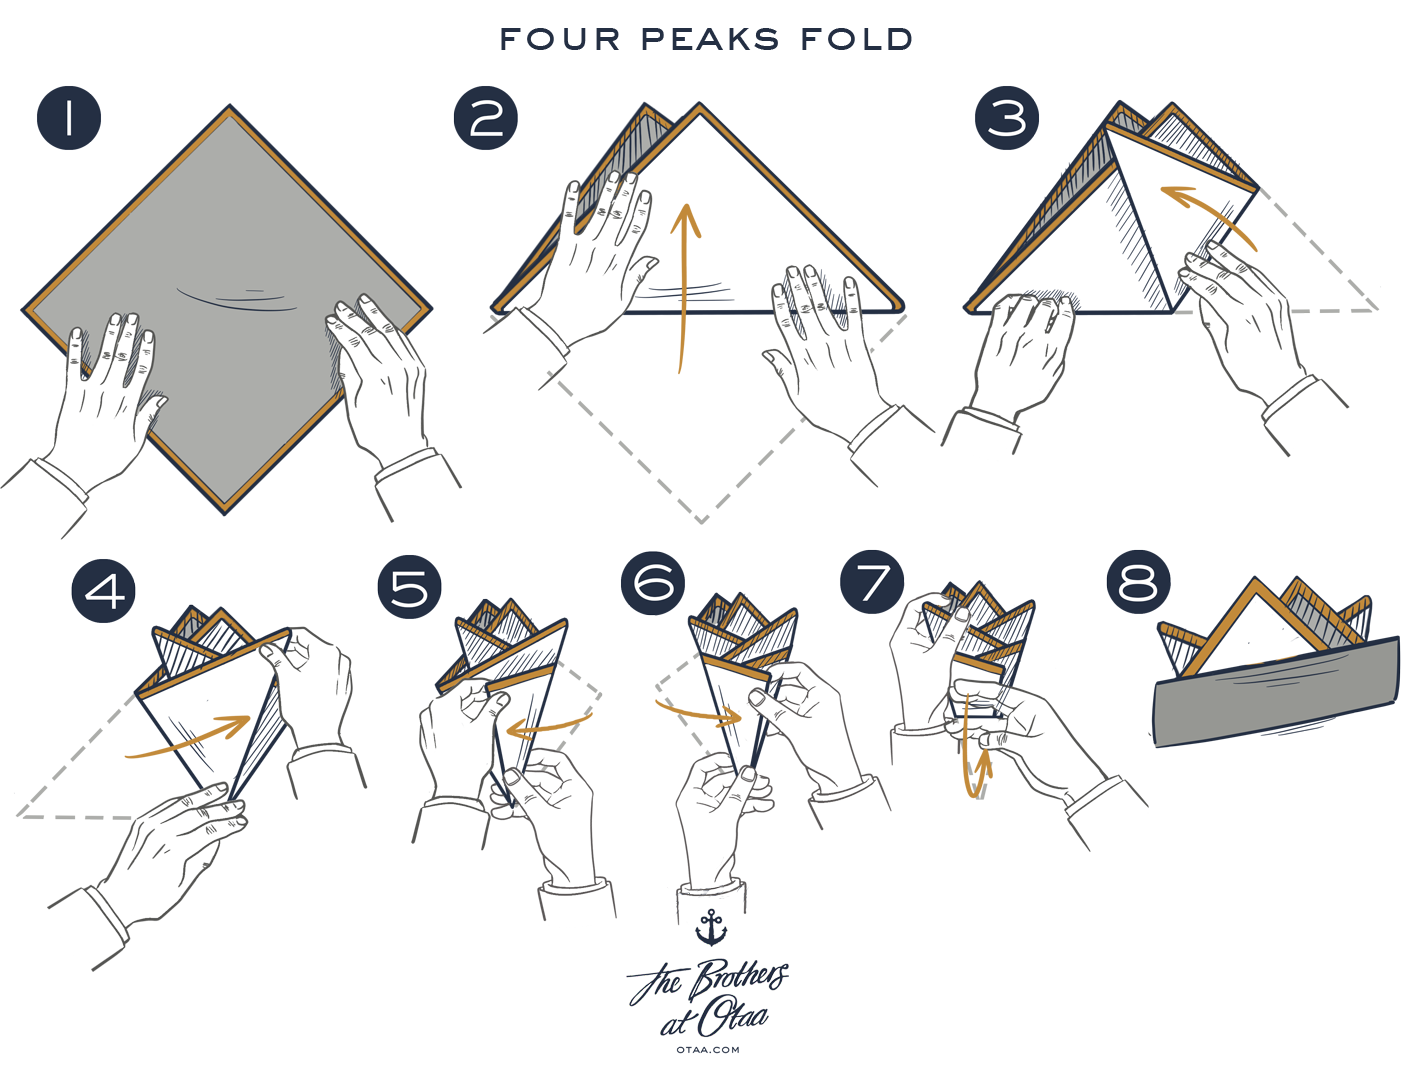 How To Fold A Four Peak Fold - steps